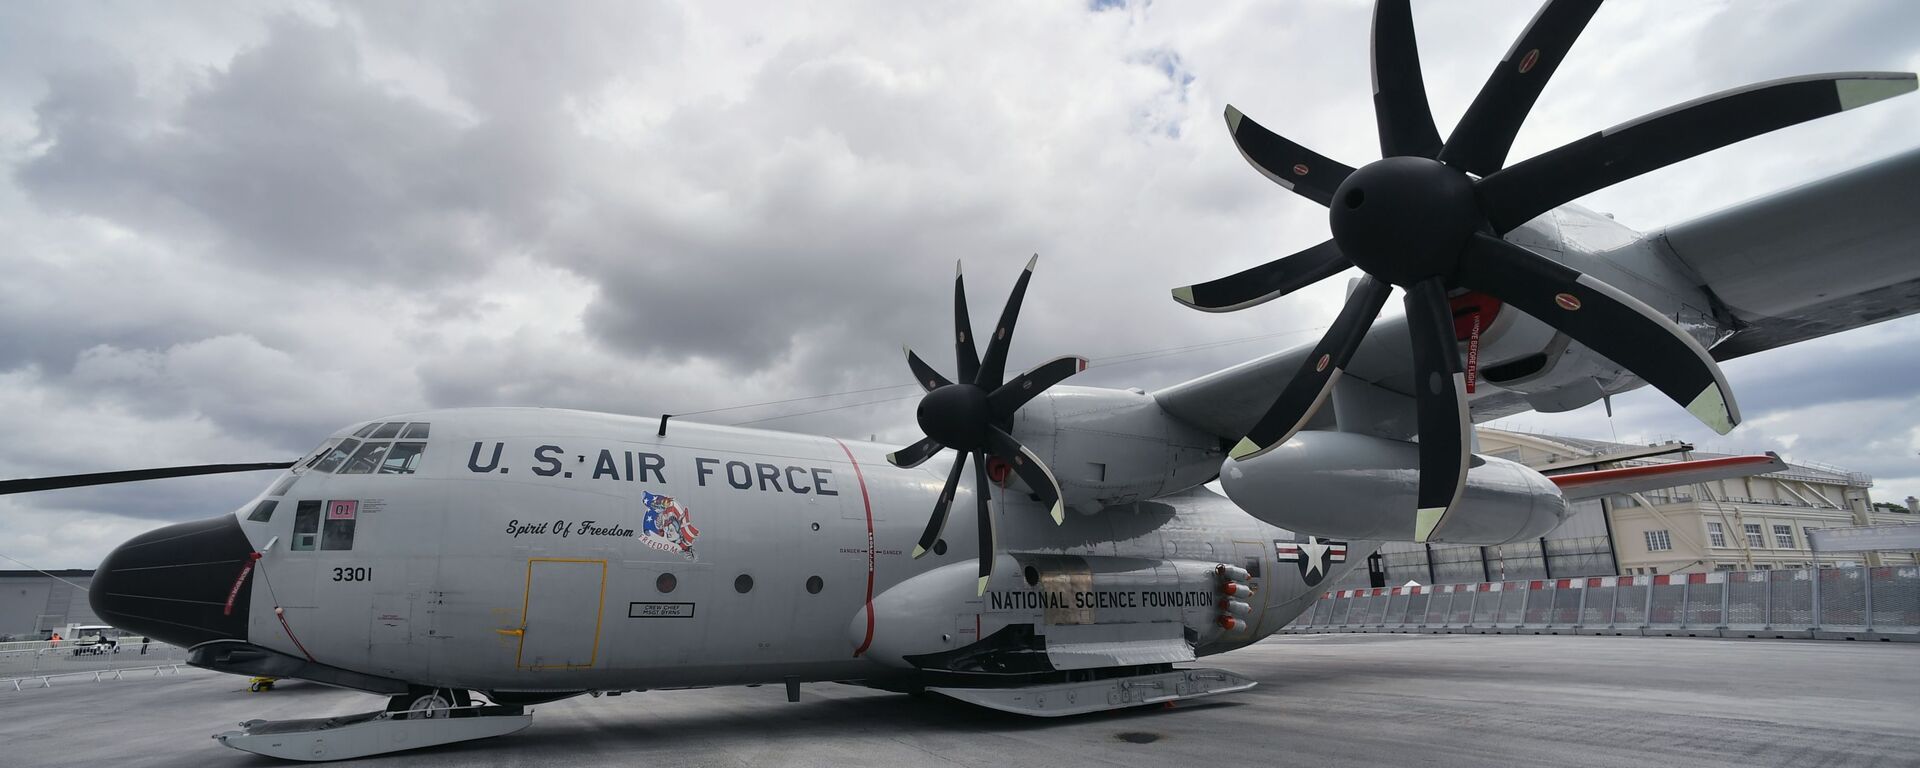 Военно-транспортный самолет Lockheed C-130 Hercules, оборудованный лыжными шасси, в аэропорту Ле-Бурже, где пройдет международный аэрокосмический салон Paris Air Show 2019 - Sputnik Mundo, 1920, 21.12.2023